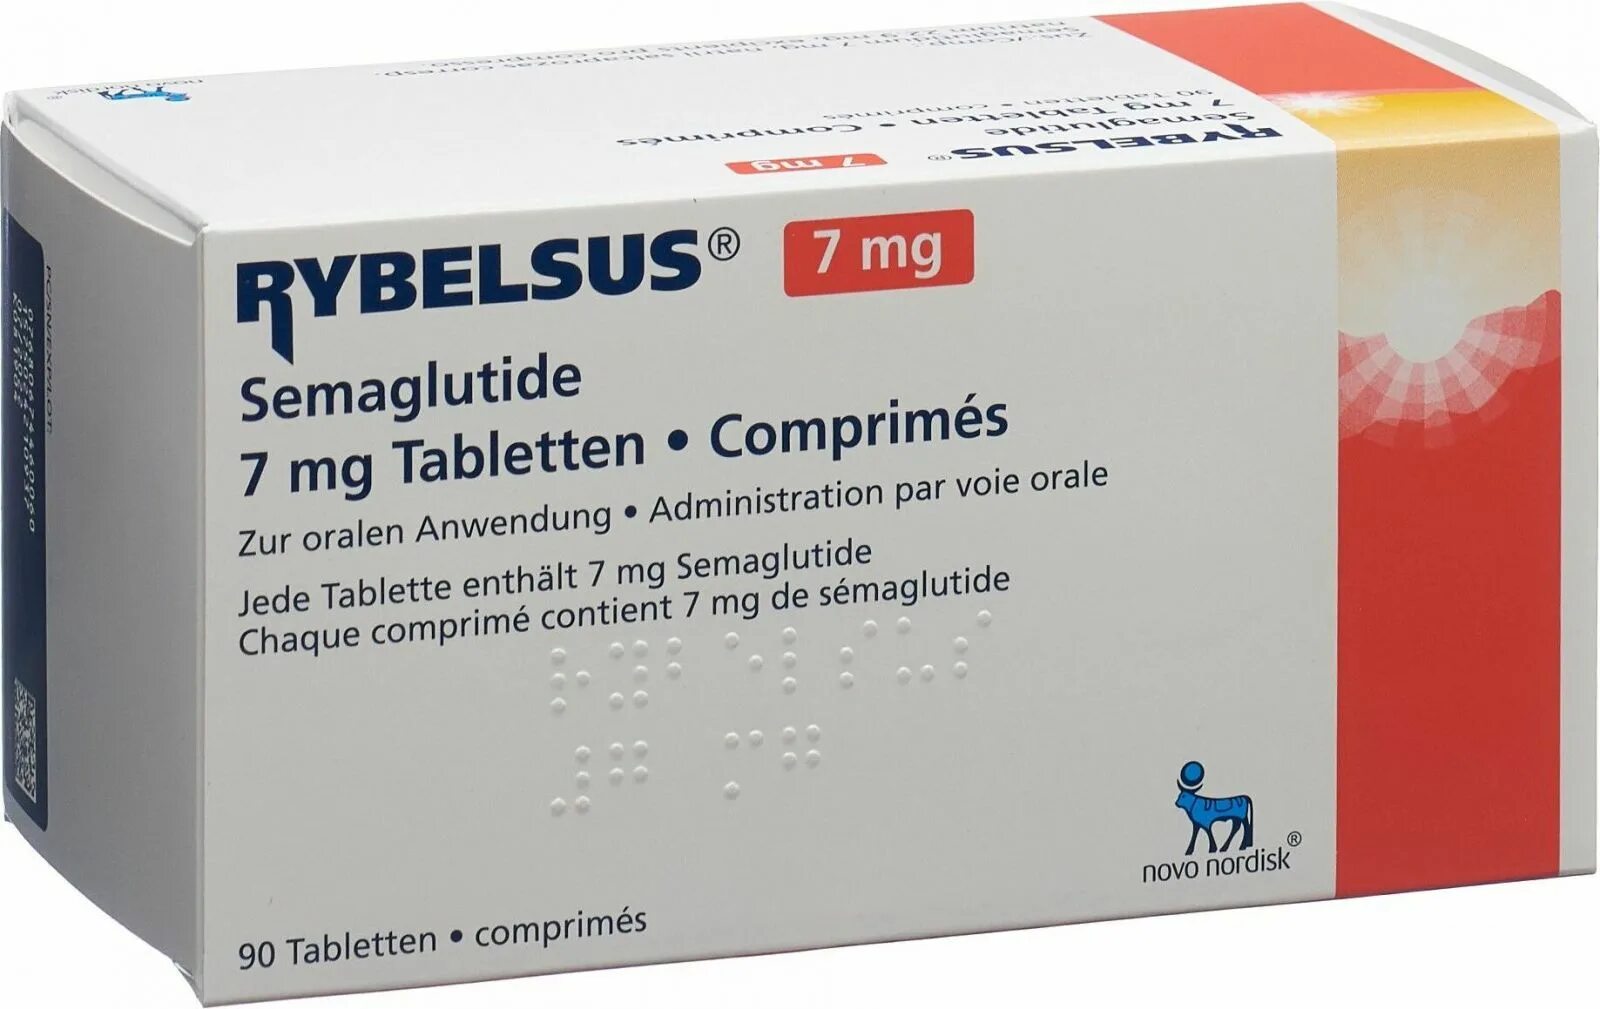 Оземпик аналоги семавик. Оземпик препарат 1 мг. Рибелсус (rybelsus, семаглутид). Оземпик 3 мг. Rybelsus 7 мг.